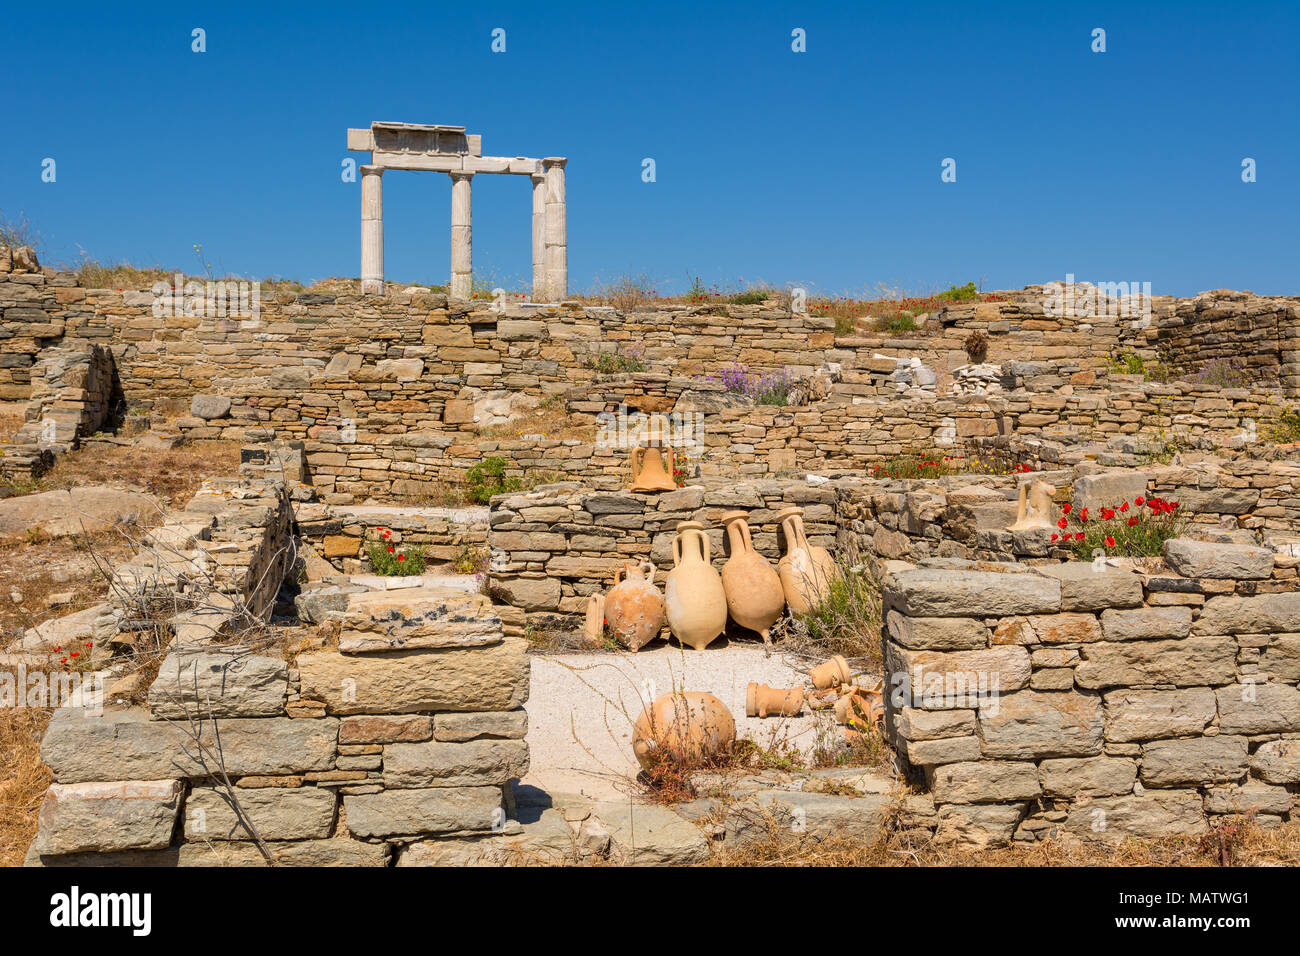 Vasi antichi e il Tempio di Apollo rovine nel sito archeologico di Isola di Delos, Cicladi Grecia Foto Stock